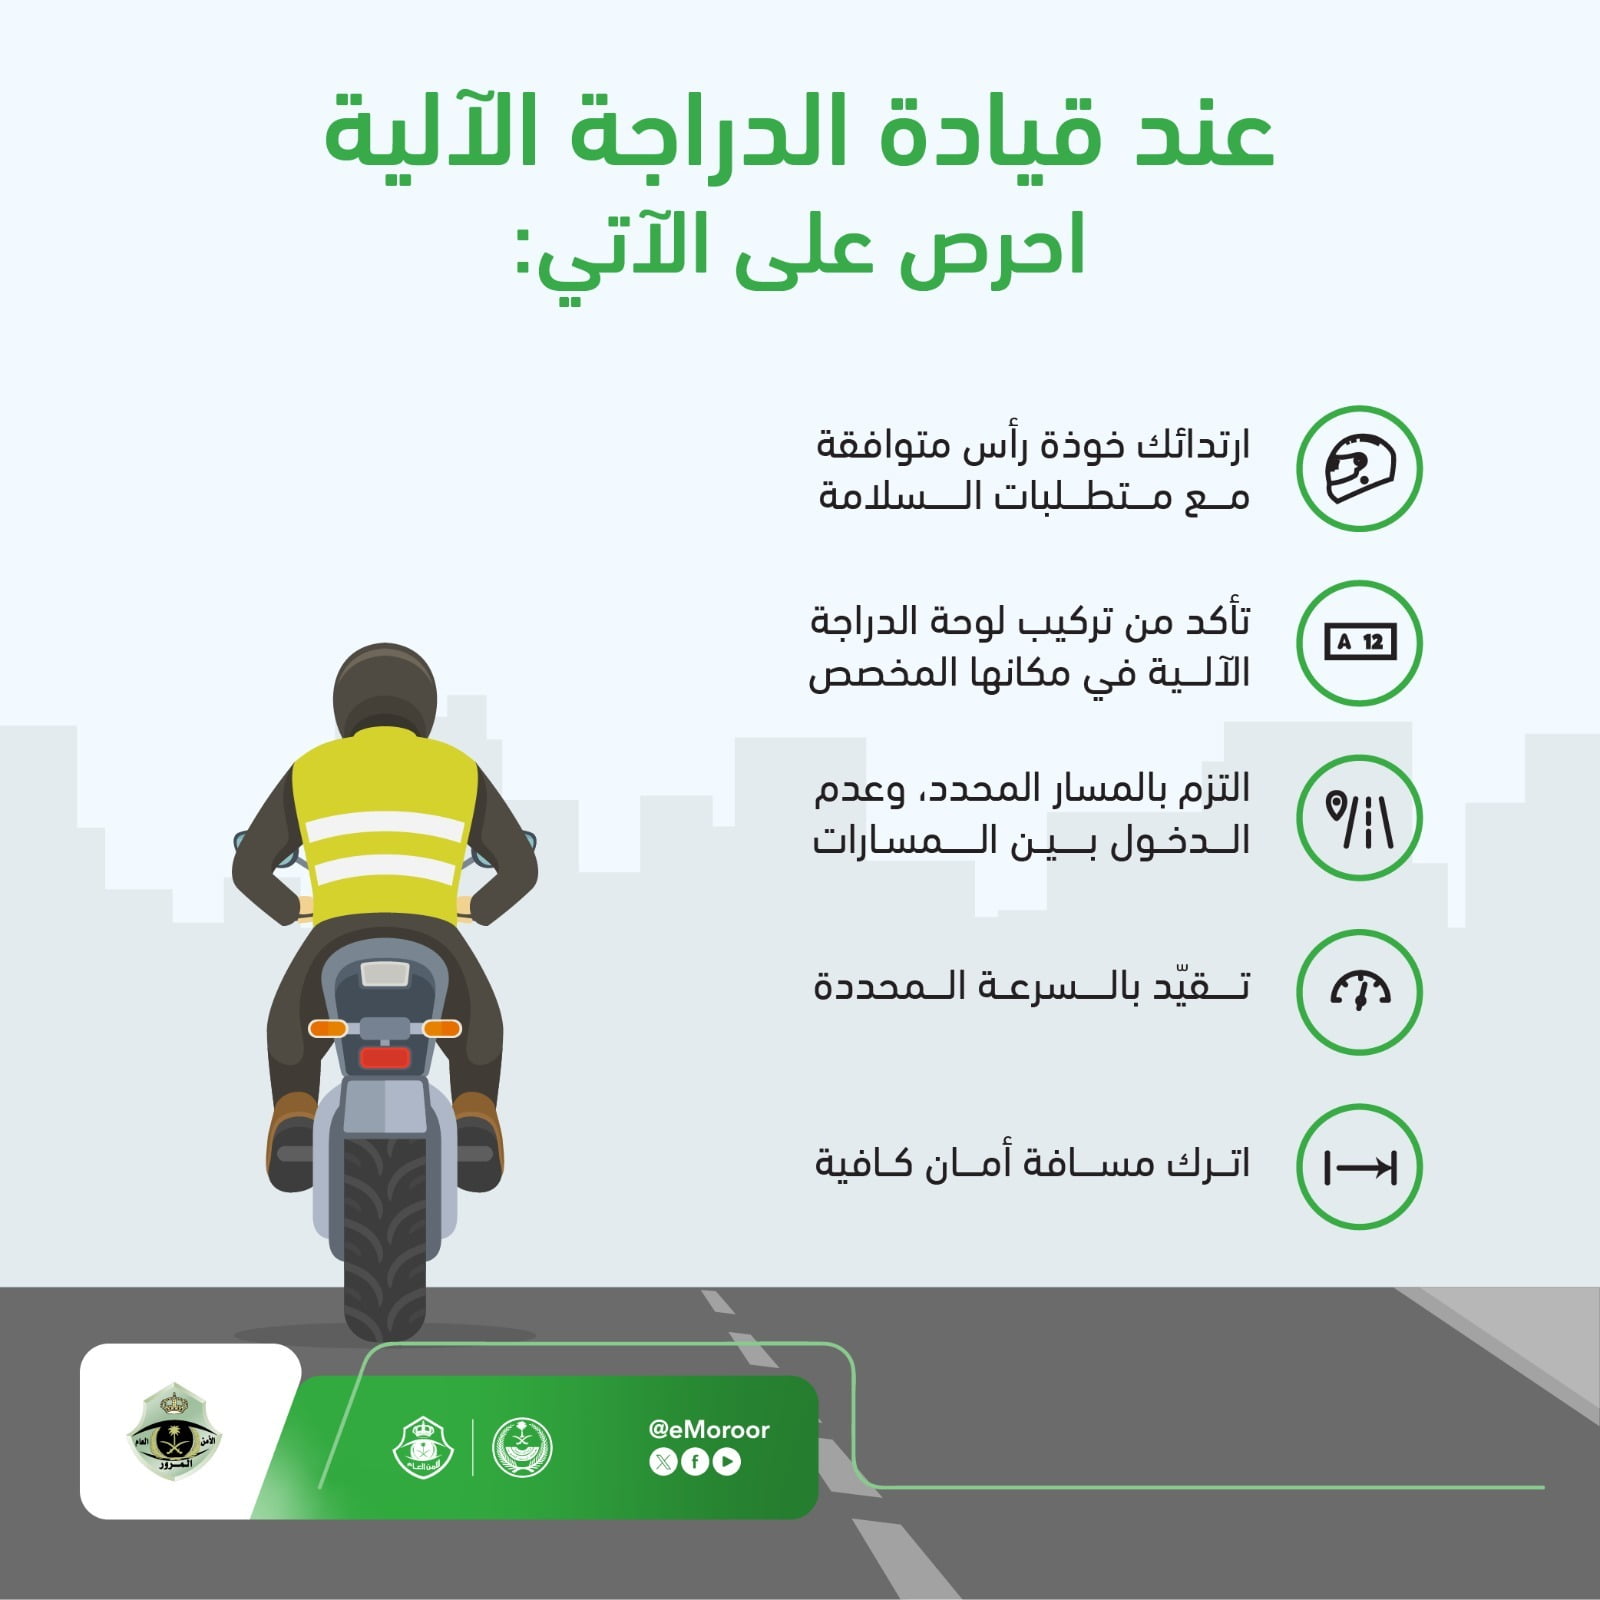 "المرور" يوجه 5 تعليمات لقيادة الدراجات النارية بطريقة آمنة 8